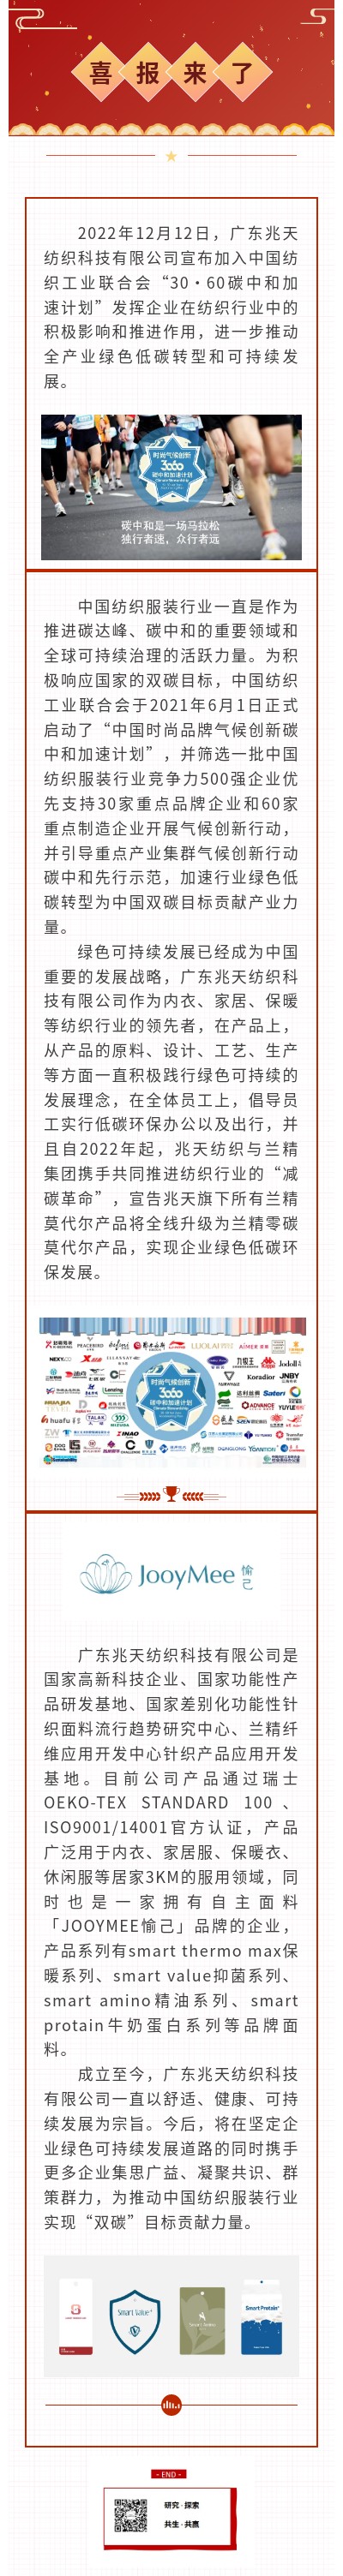 广东兆天纺织科技有限公司加入30·60碳中和计划(图1)